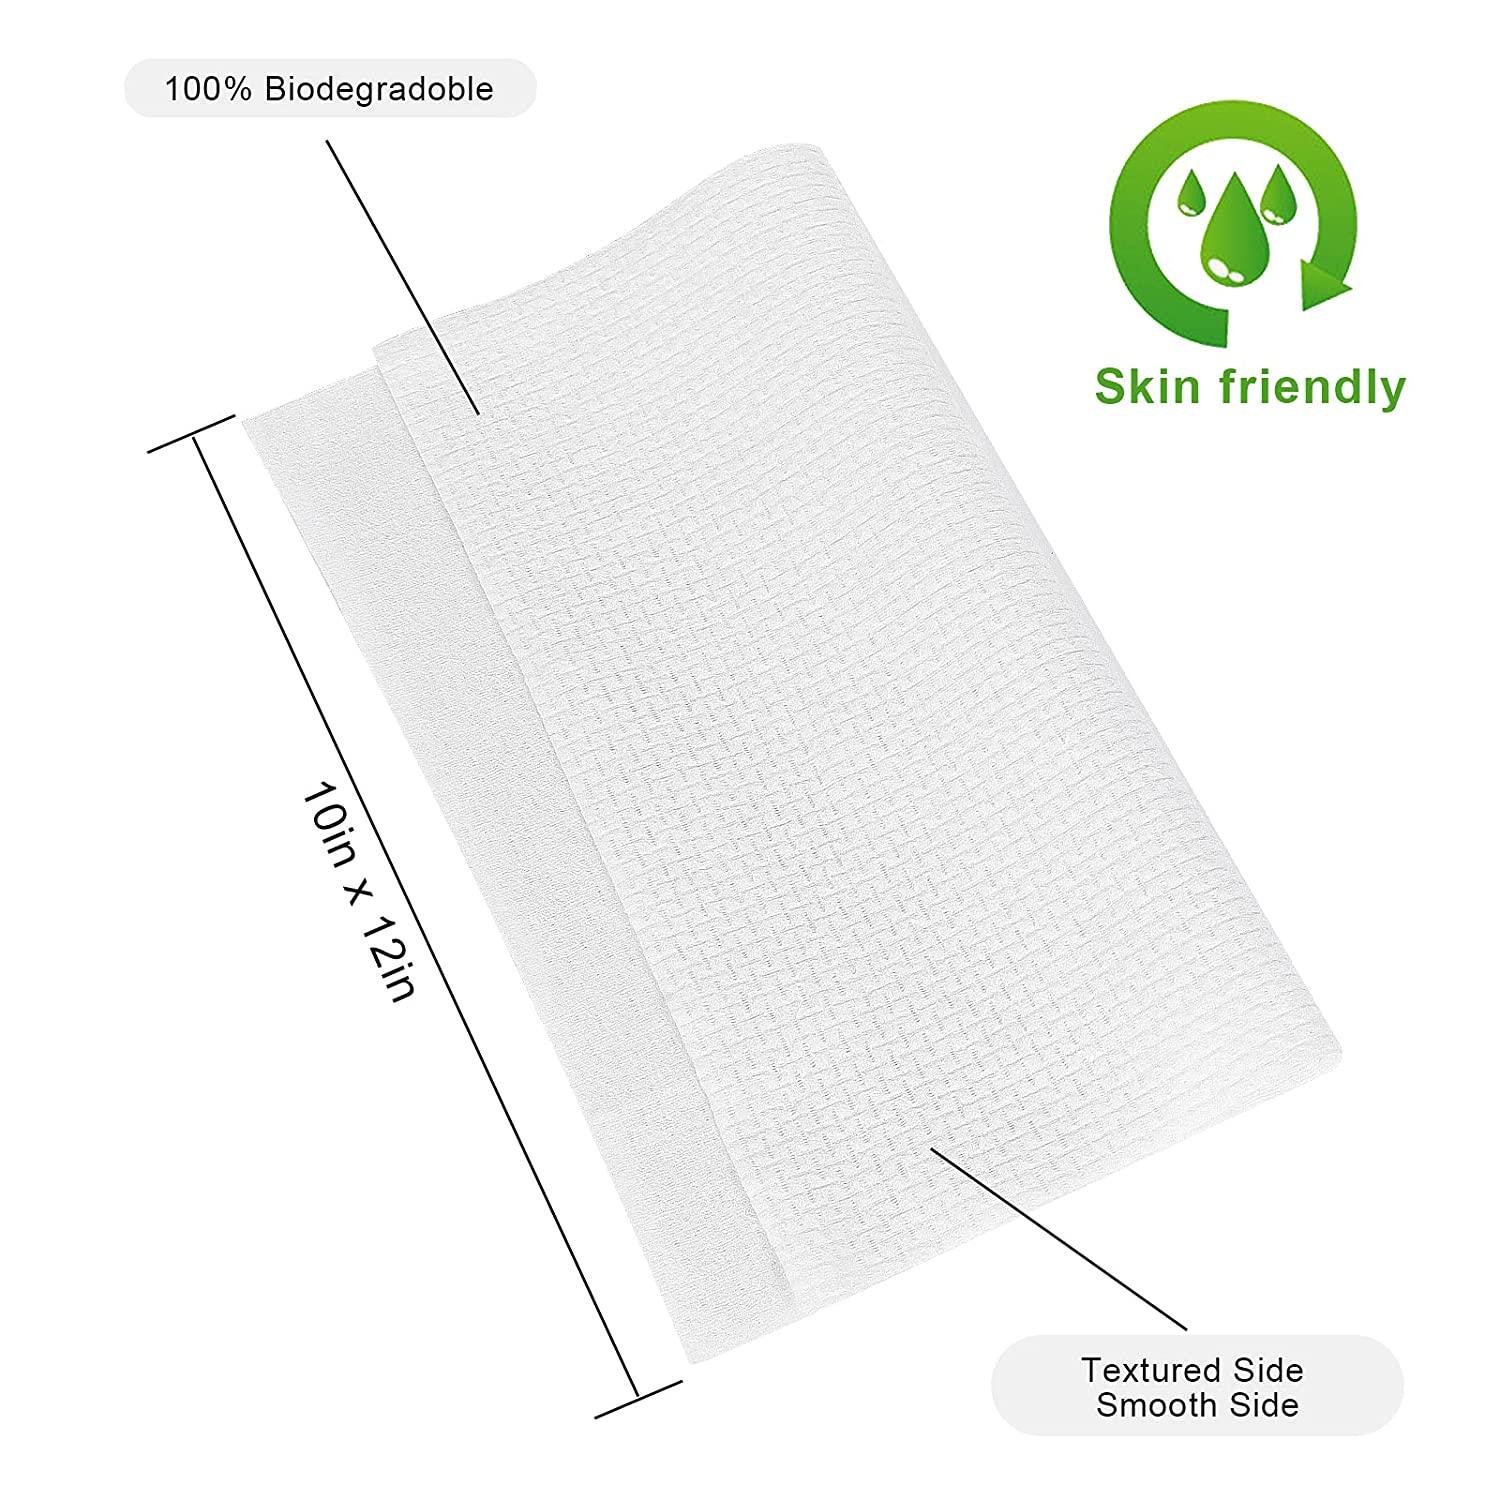 RUIJIU Disposable Face Towel Clean Towels XL, Large Size 10X 12, 100%  Cotton Biodegradable Unscented Soft and Thick Disposable Clean Face Towels  for